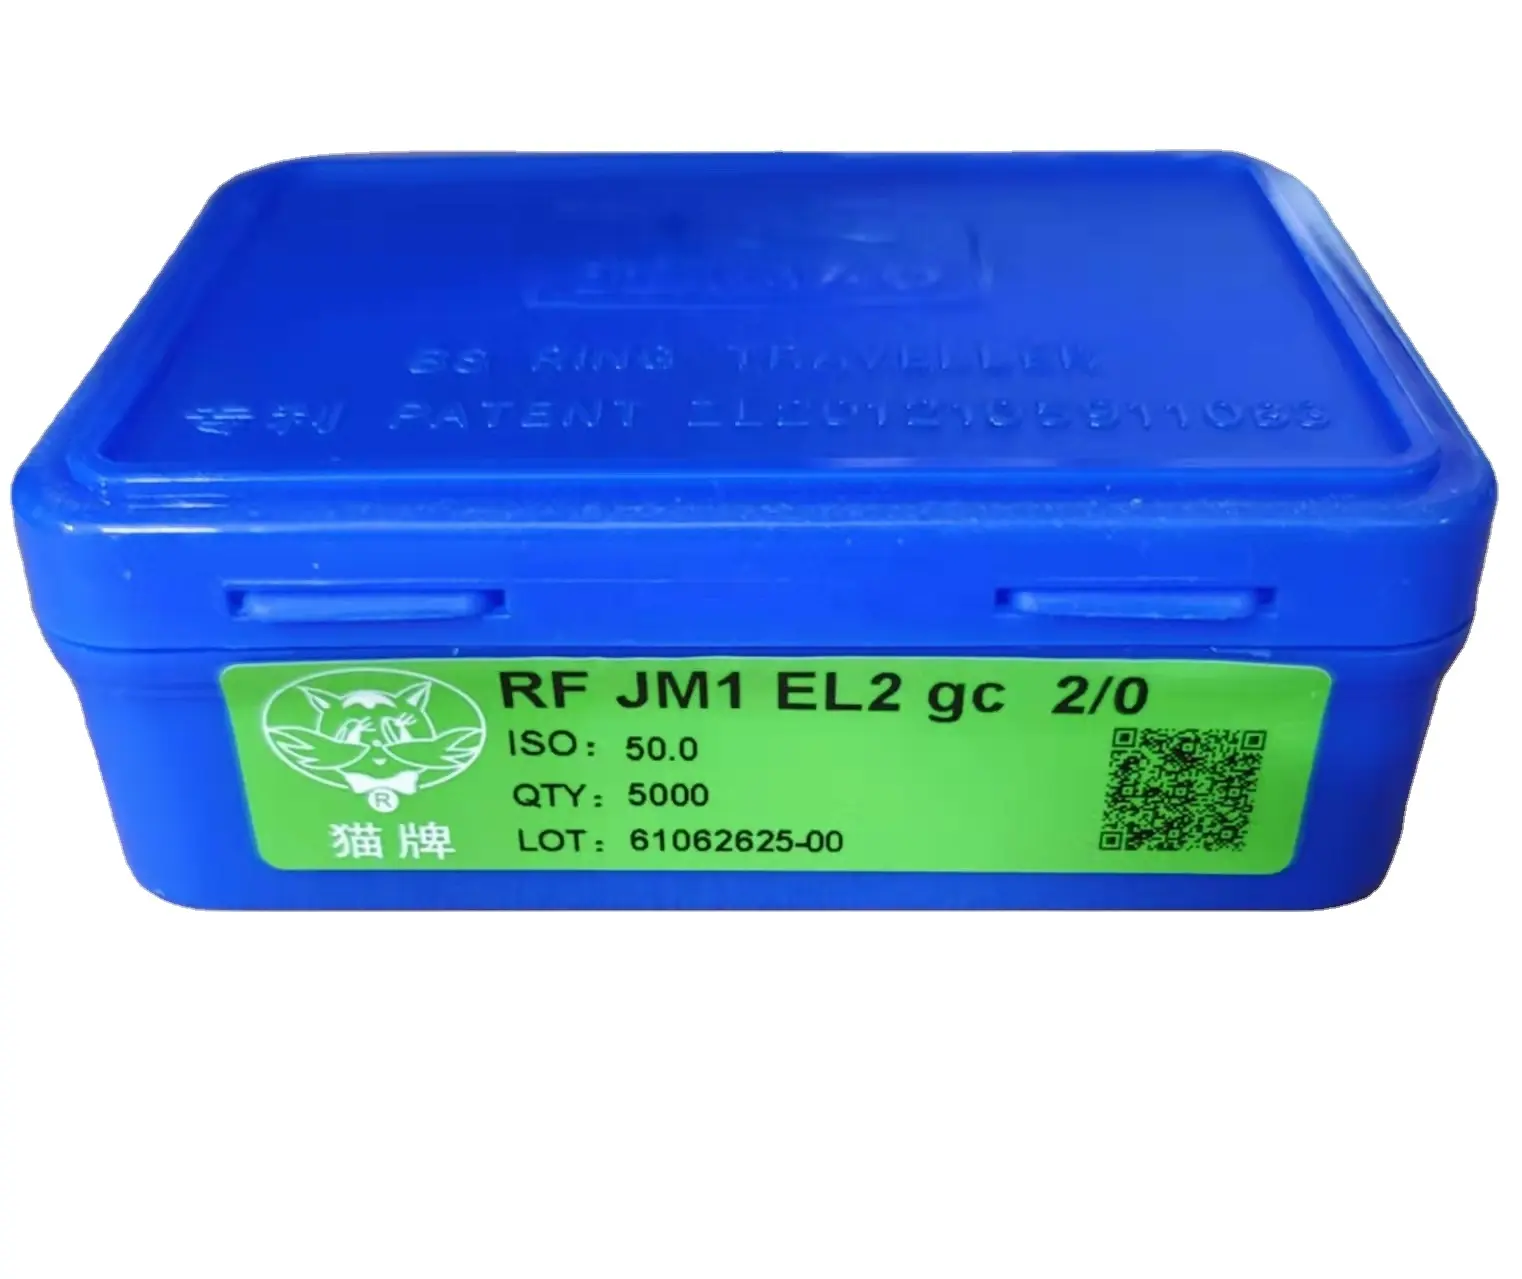 अंगूठी यात्री JINMAO RFJM1 EL2gc कताई मशीन रिंग फ्रेम के लिए